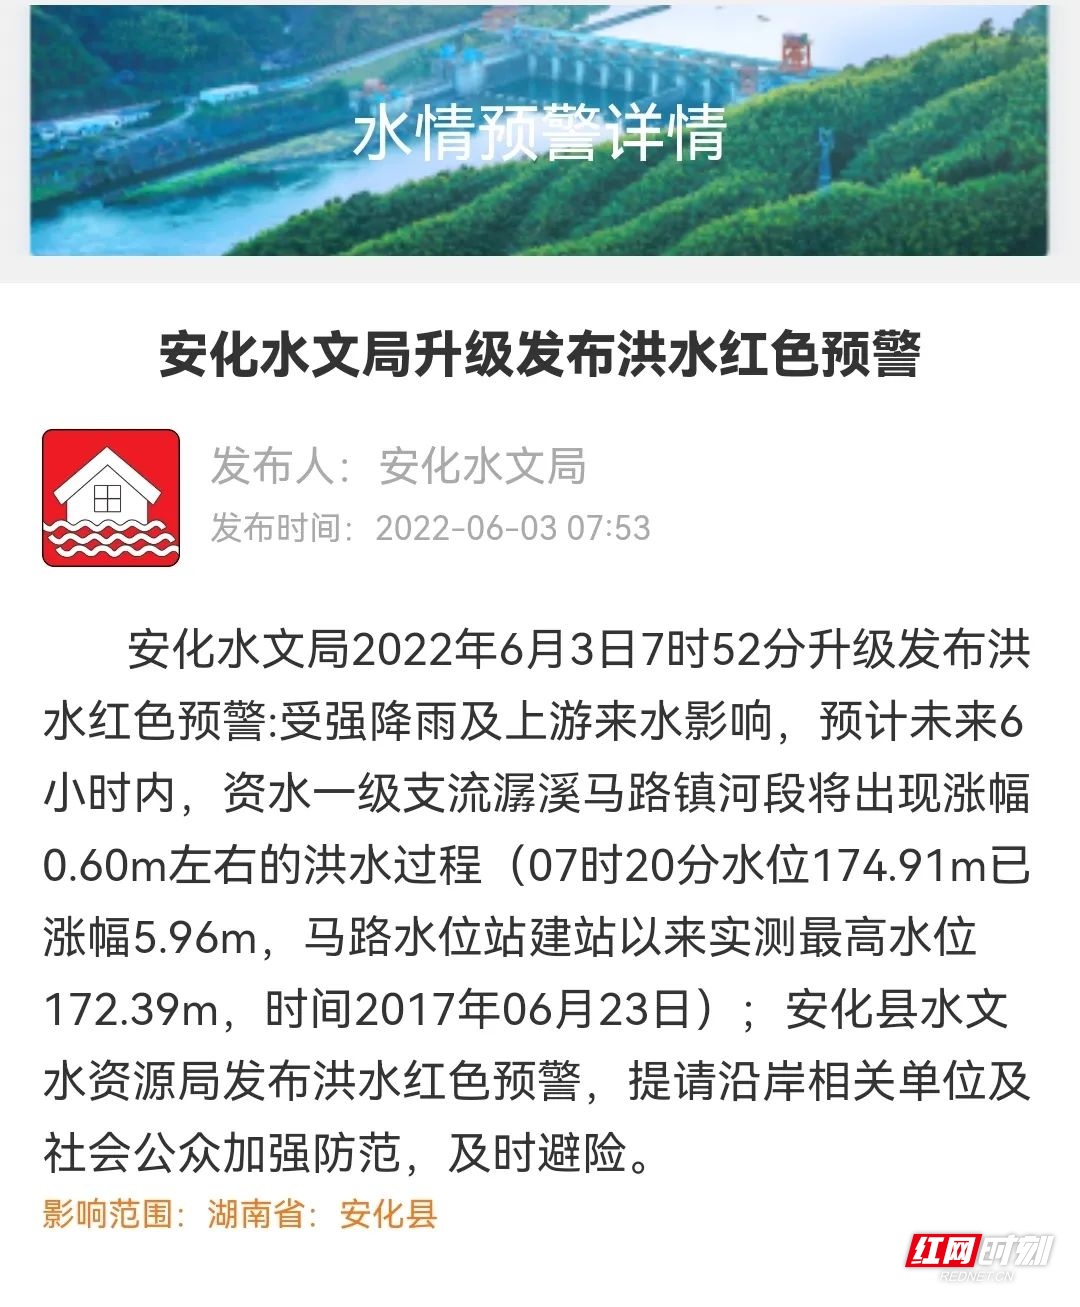 安化县马路镇河段6小时内将出现建站以来最高洪水水位